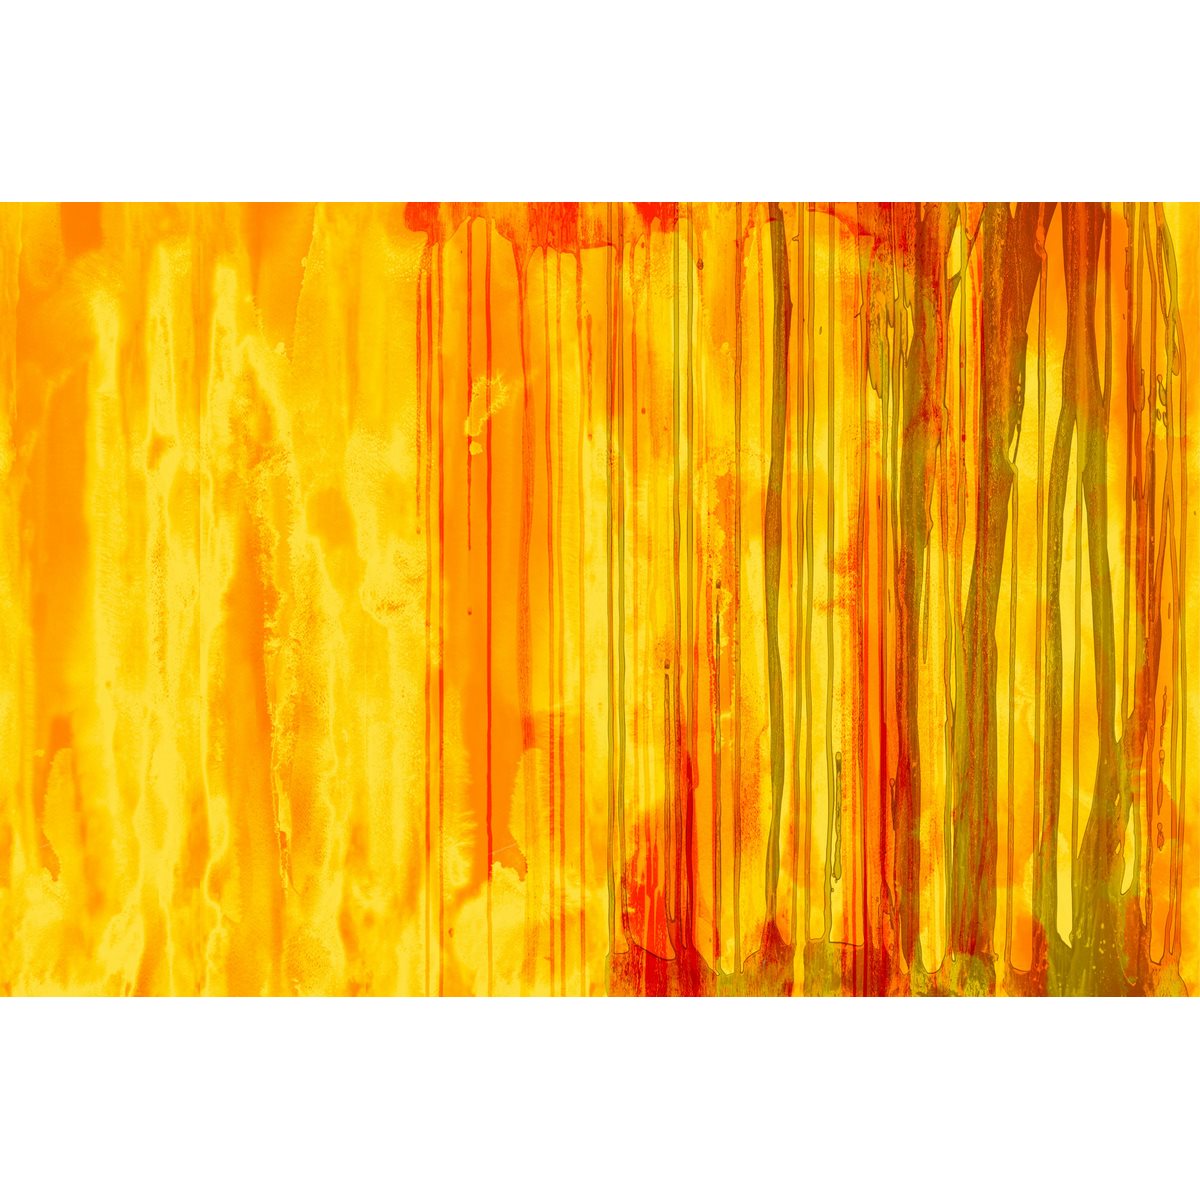 55696-GIORGIA BELTRAMI-JUNG-FIRE